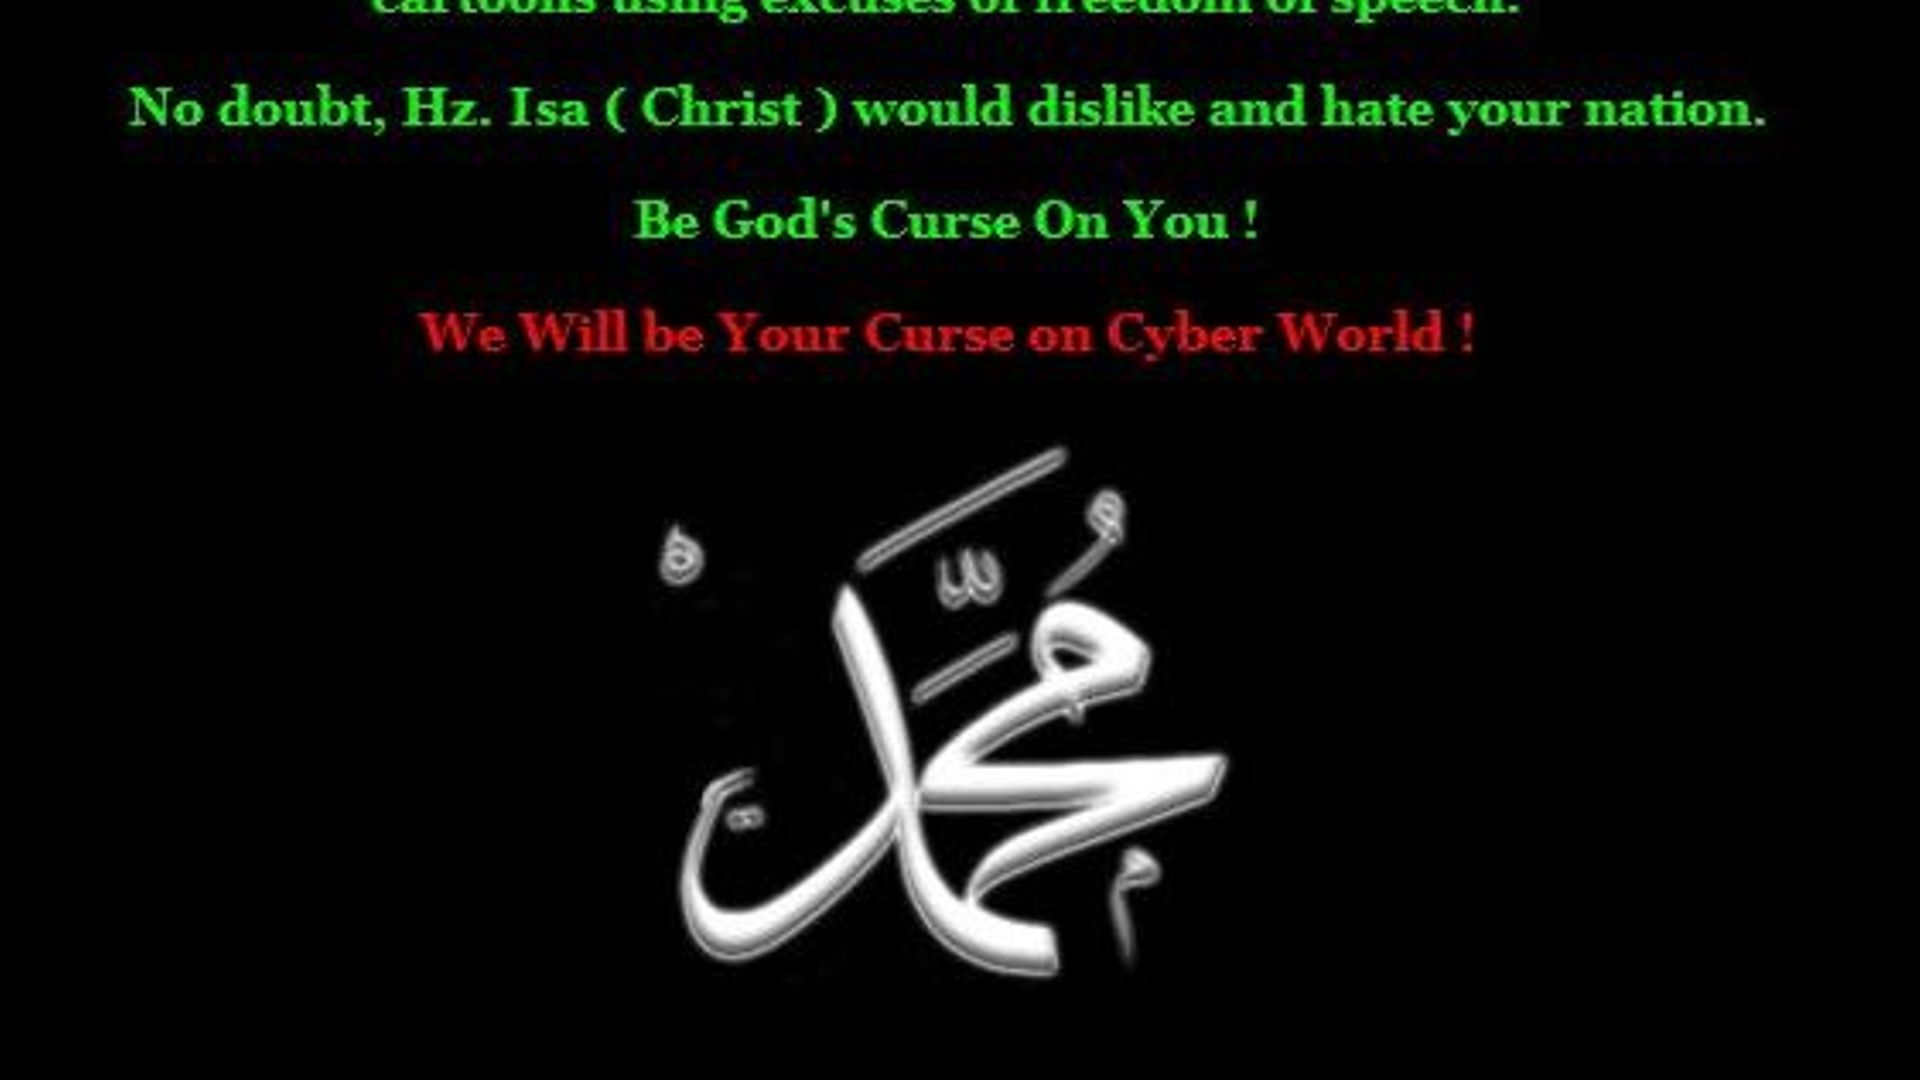 Le message des hackers turcs tel qu'affiché sur le site de Charlie Hebdo